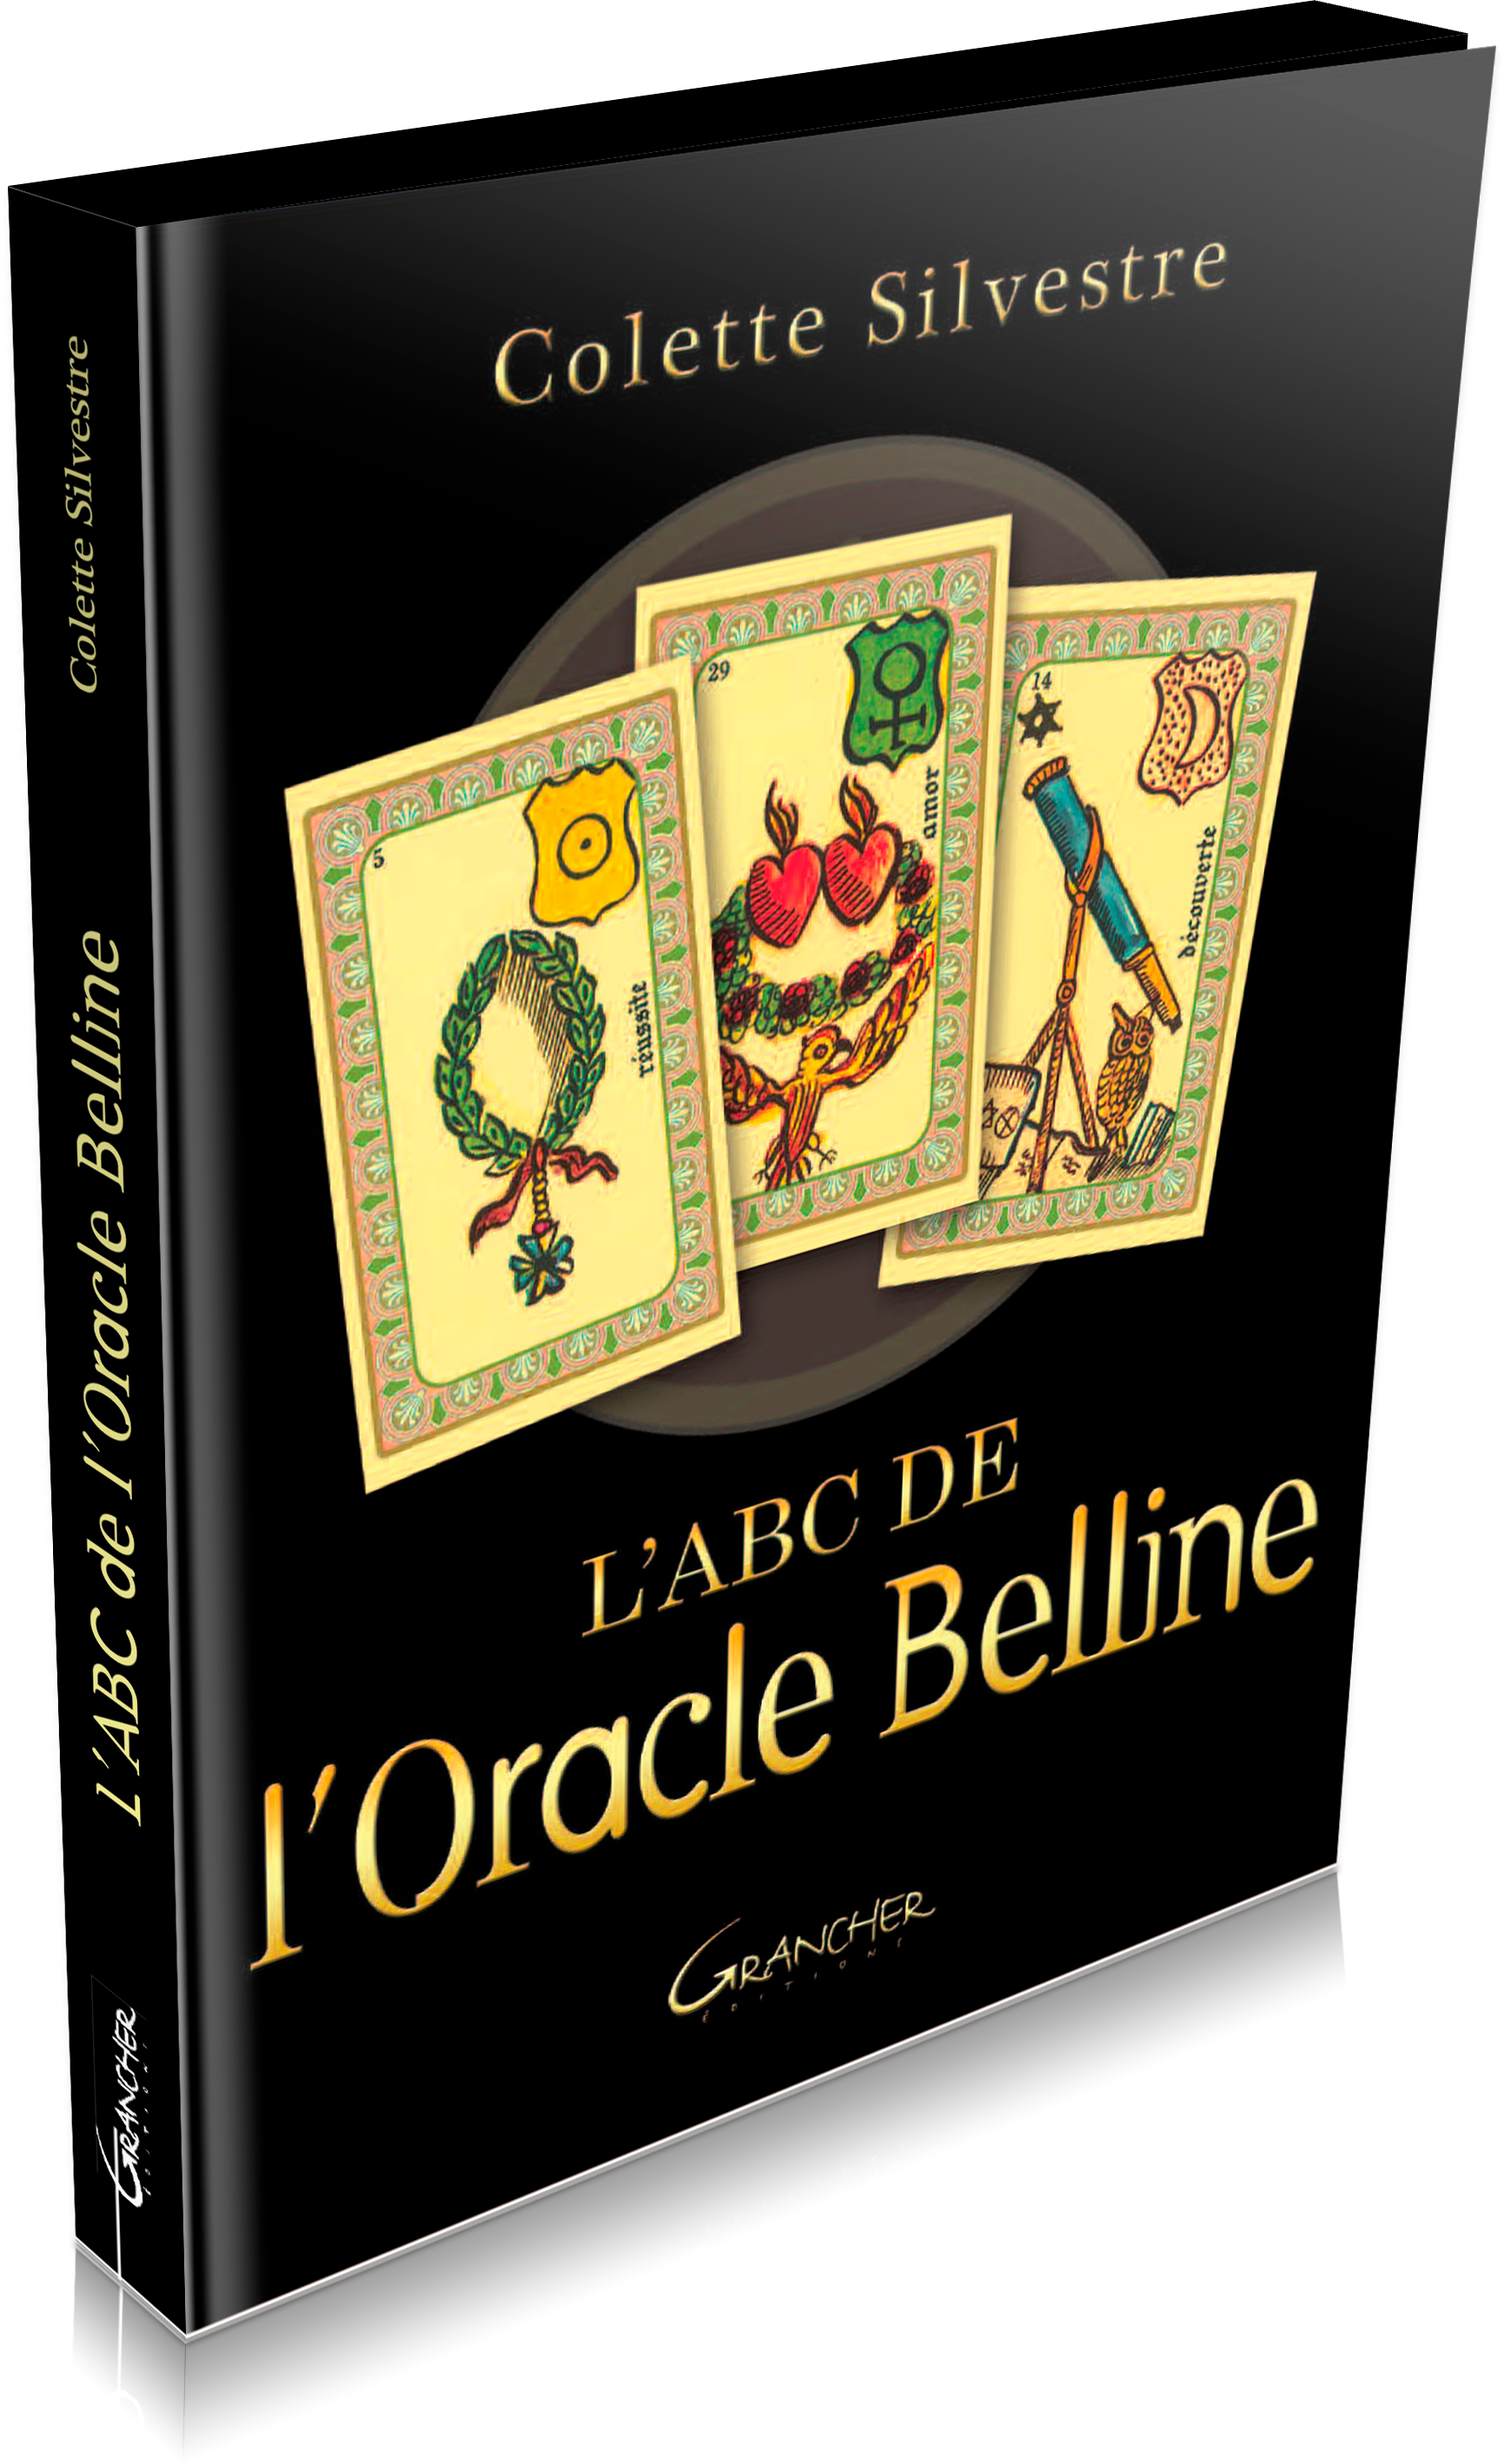 Oracle Belline 